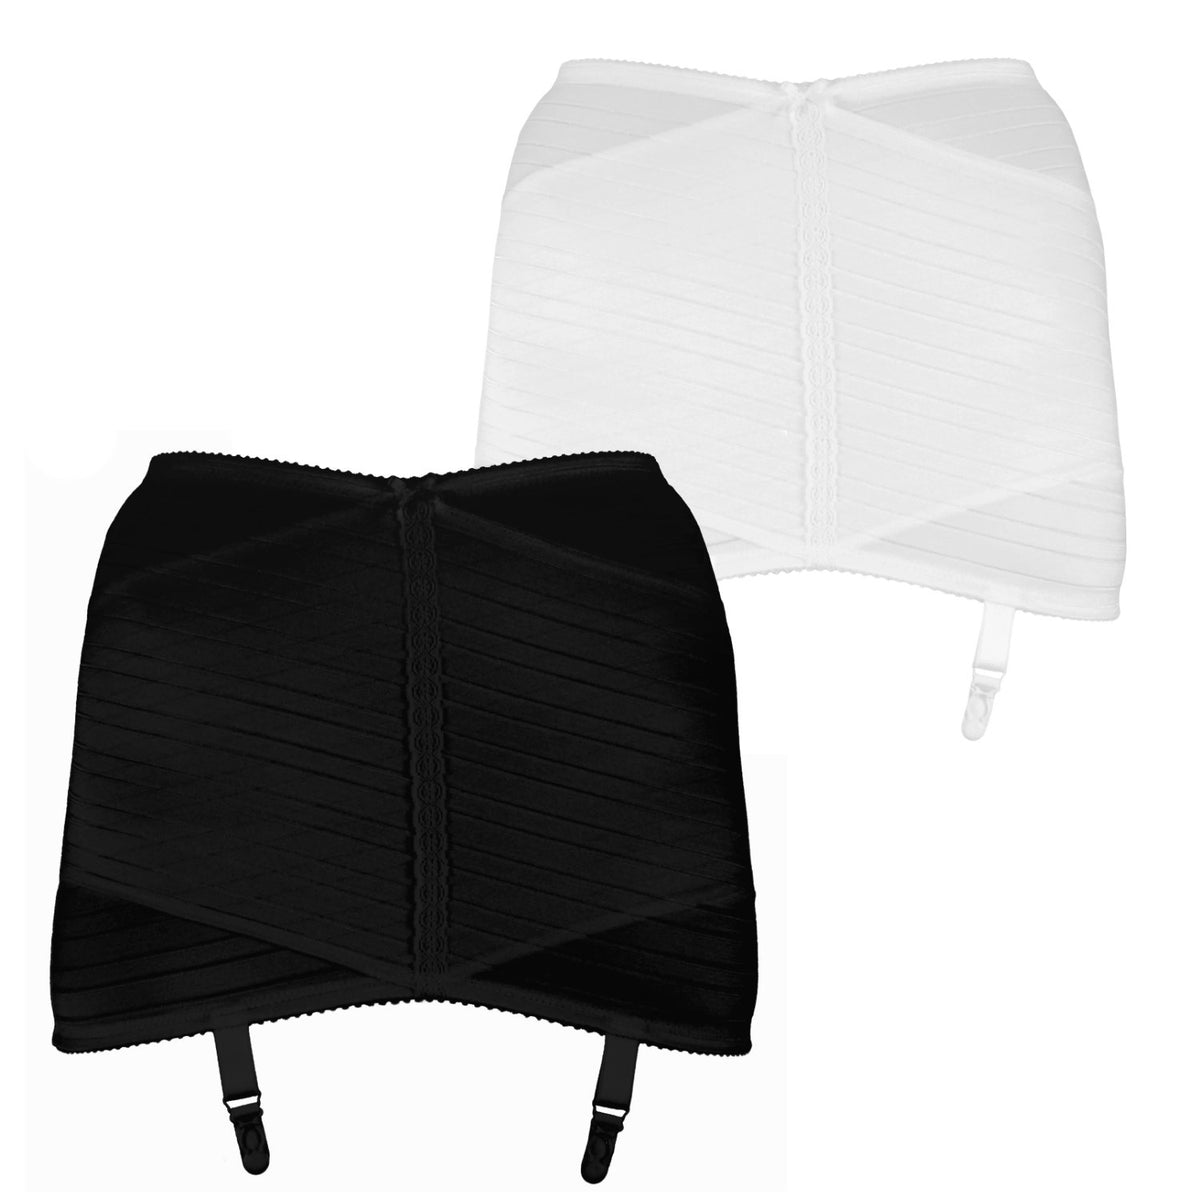 Silhouette Lingerie Open Girdle Shapewear with Garters (XN1) (3